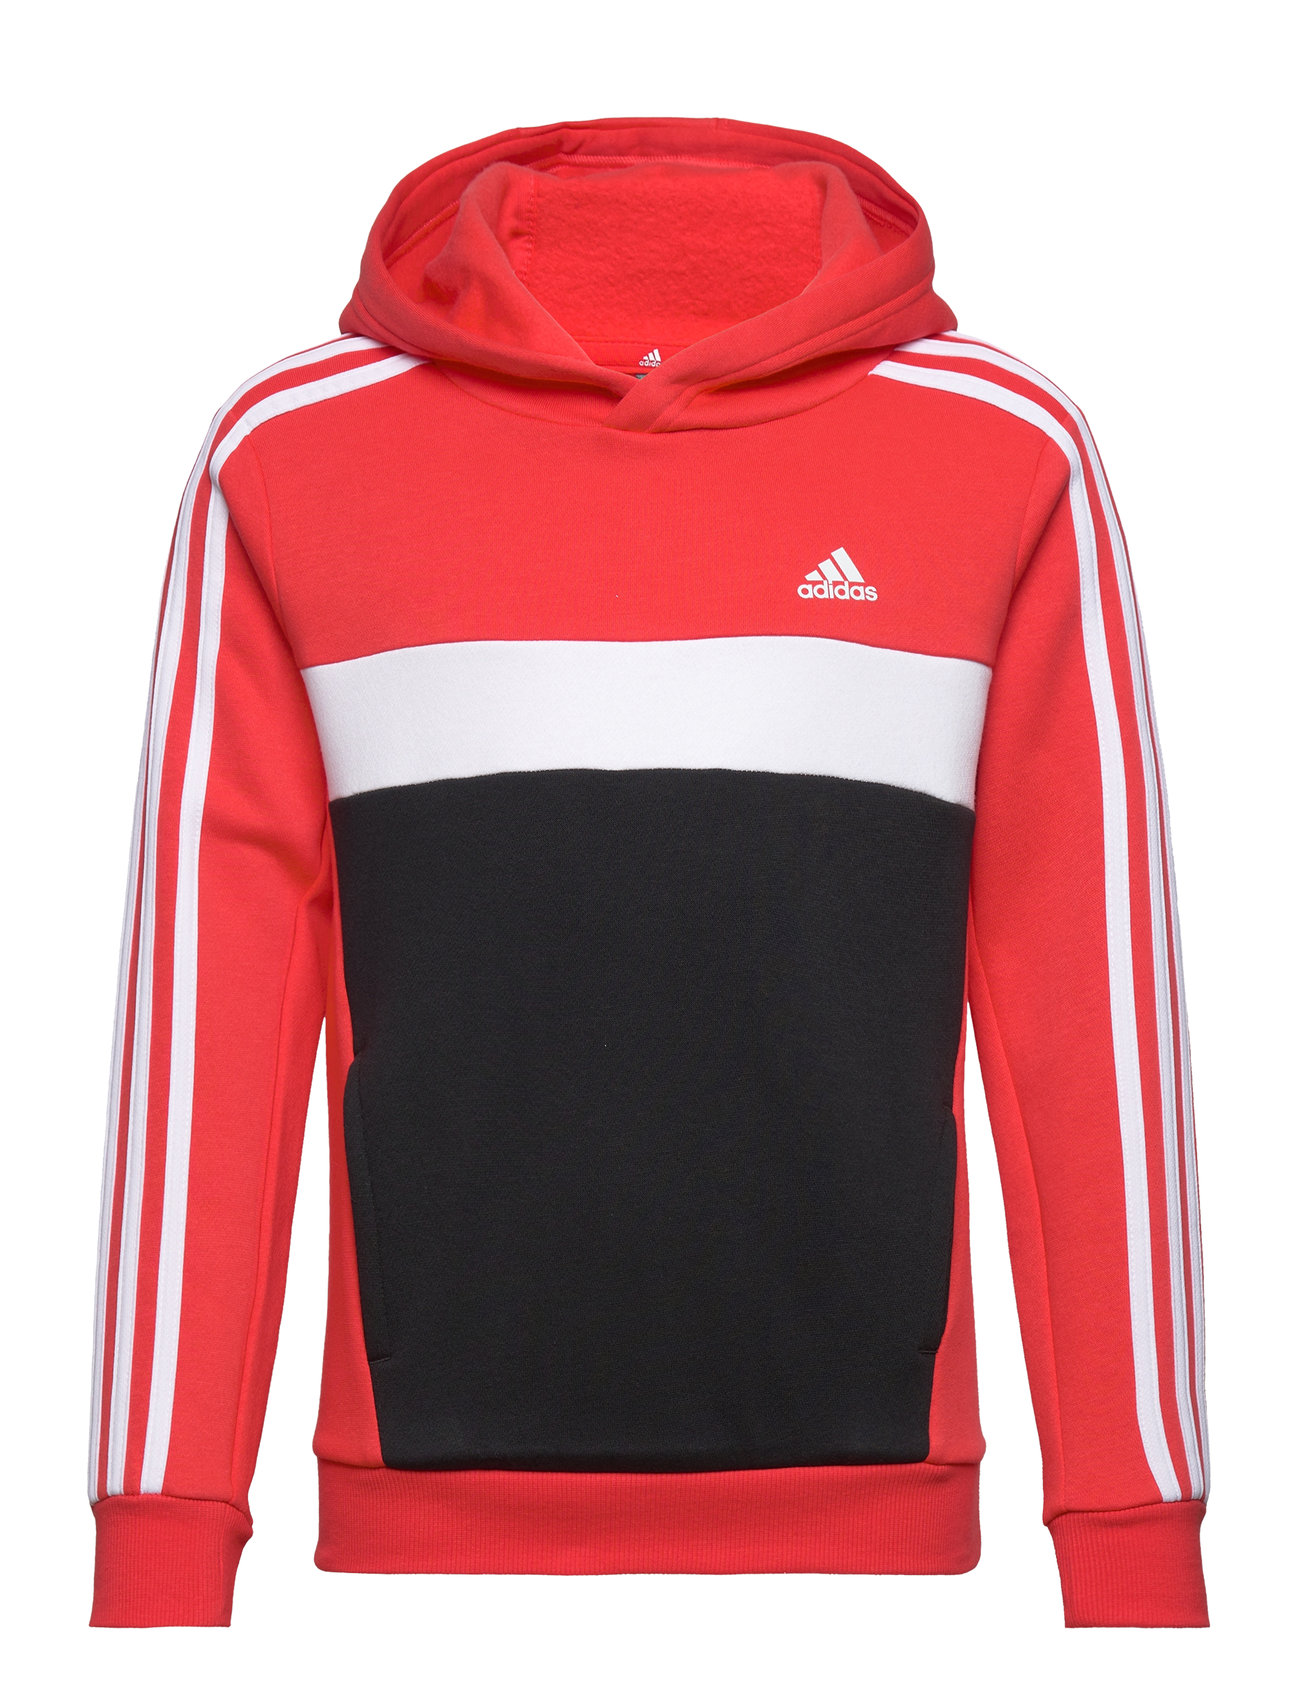 J 3S Tib Fl Hd Sport Sweat-shirts & Hoodies Hoodies Red Adidas Sportswear